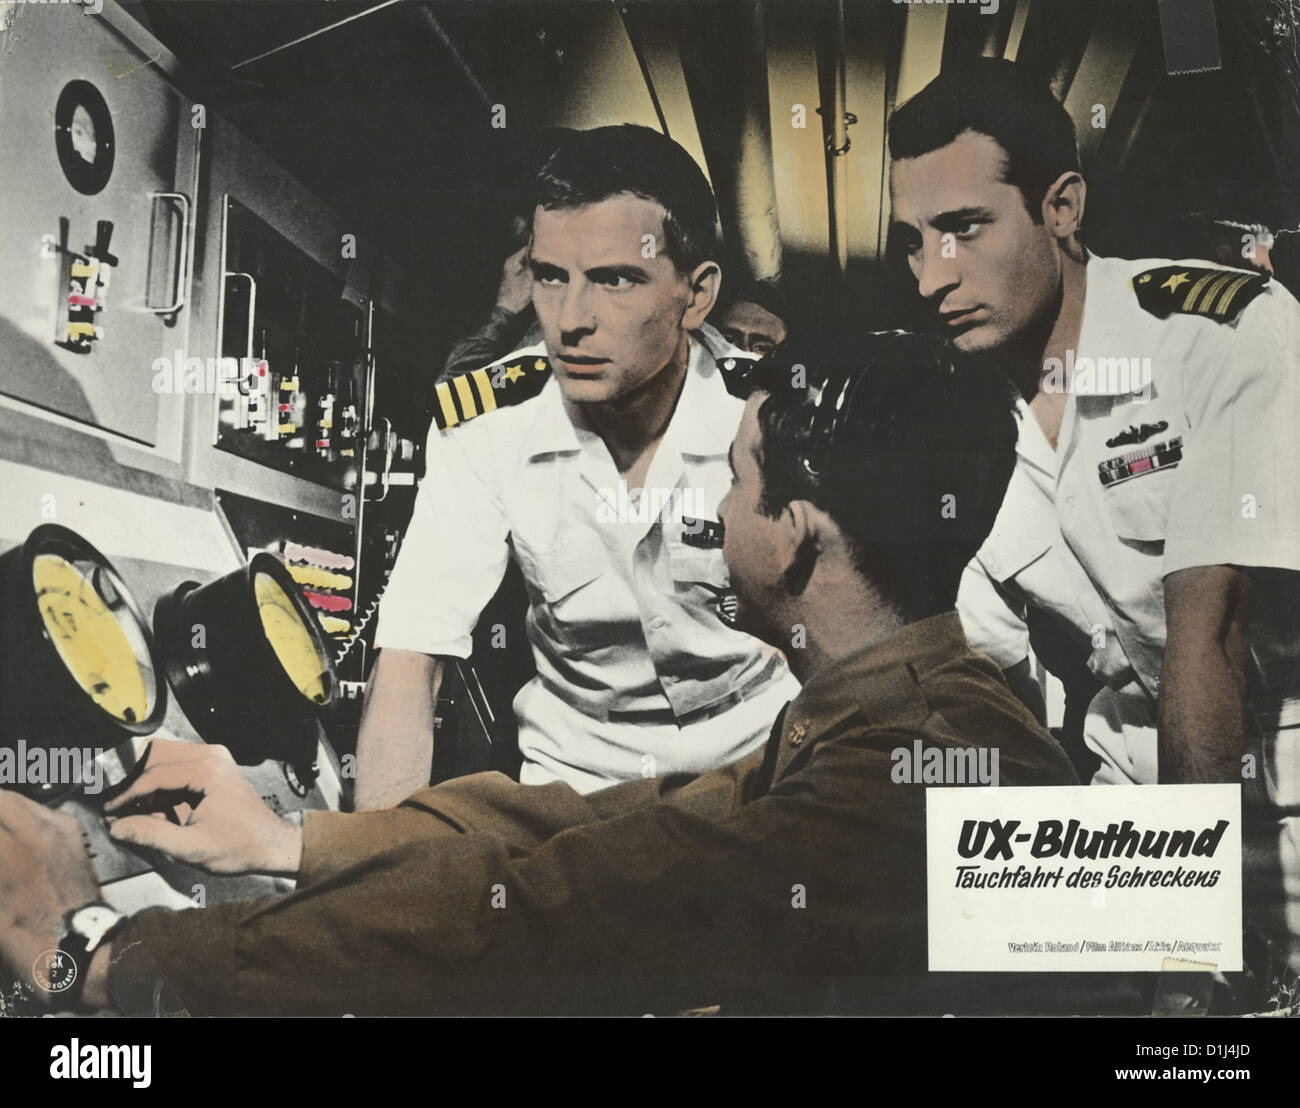 Ux Bluthund - Tauchfahrt Des Schreckens   Agent X-2 Operation Underwater   Szenenbild  -- Stock Photo